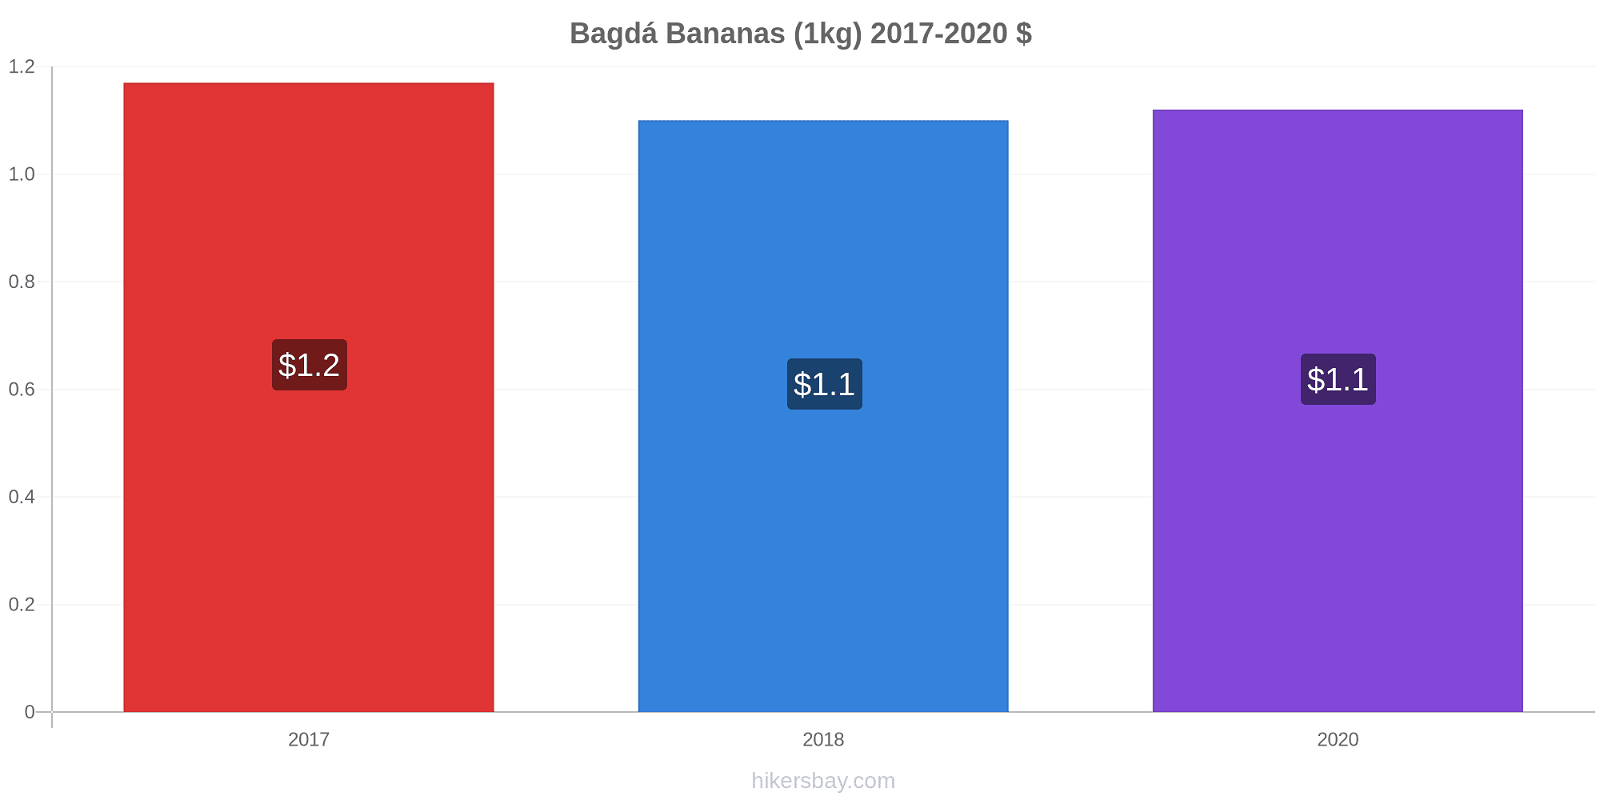 Bagdá variação de preço Banana (1kg) hikersbay.com